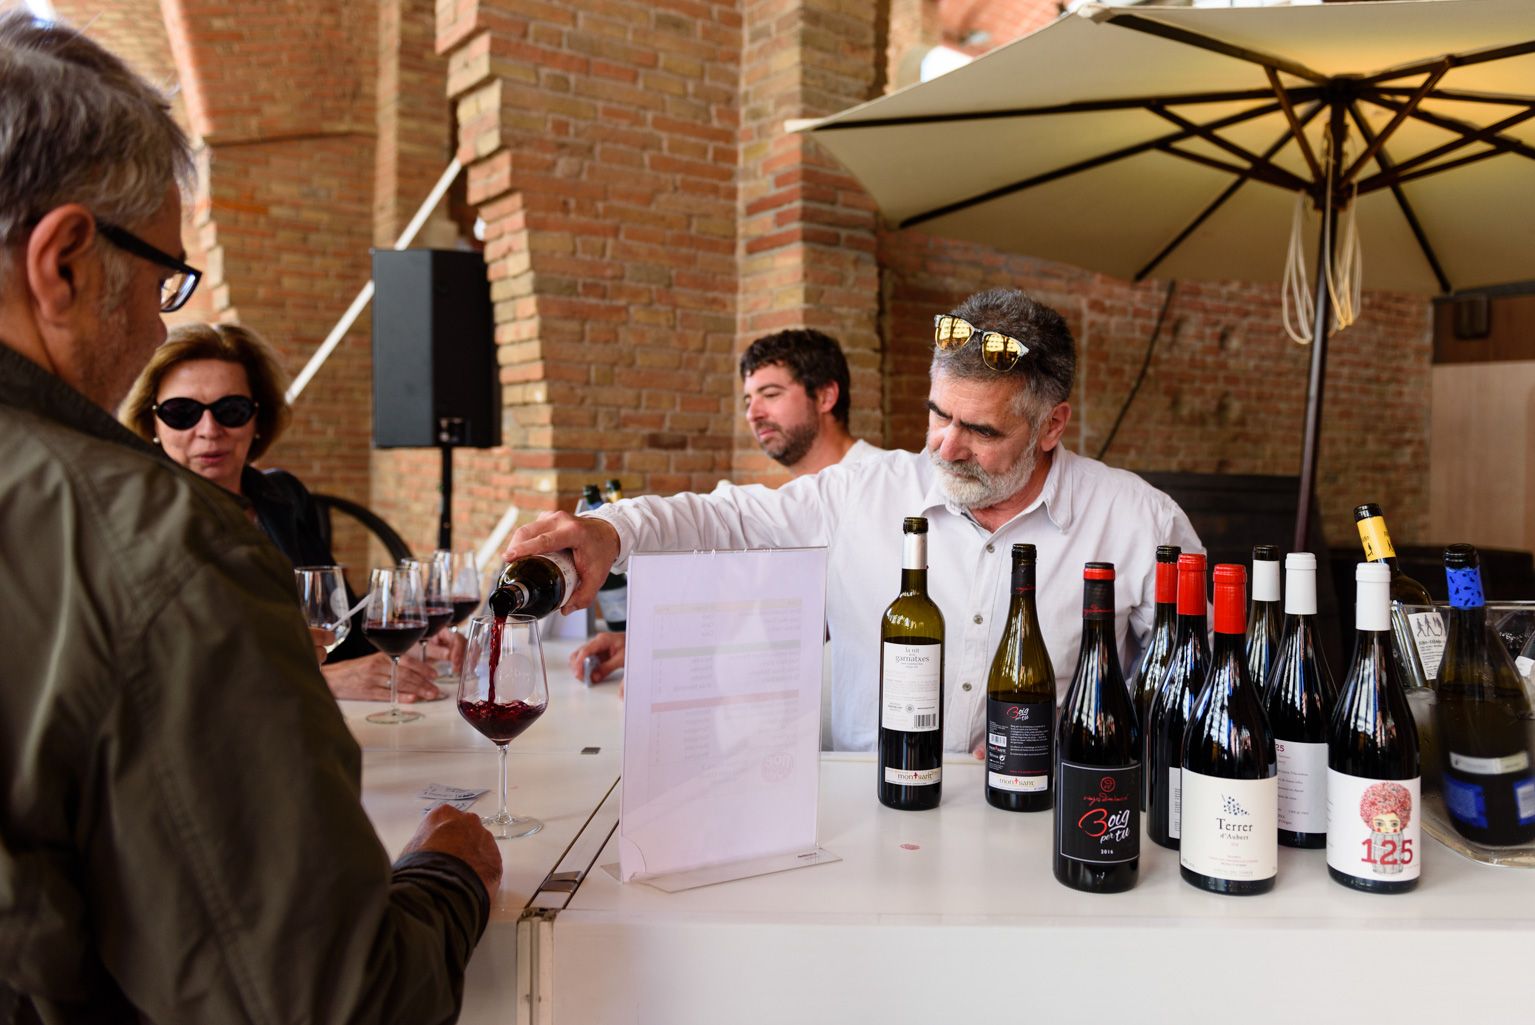 Presentacions i tast de vins. Foto: Miguel López Mallach